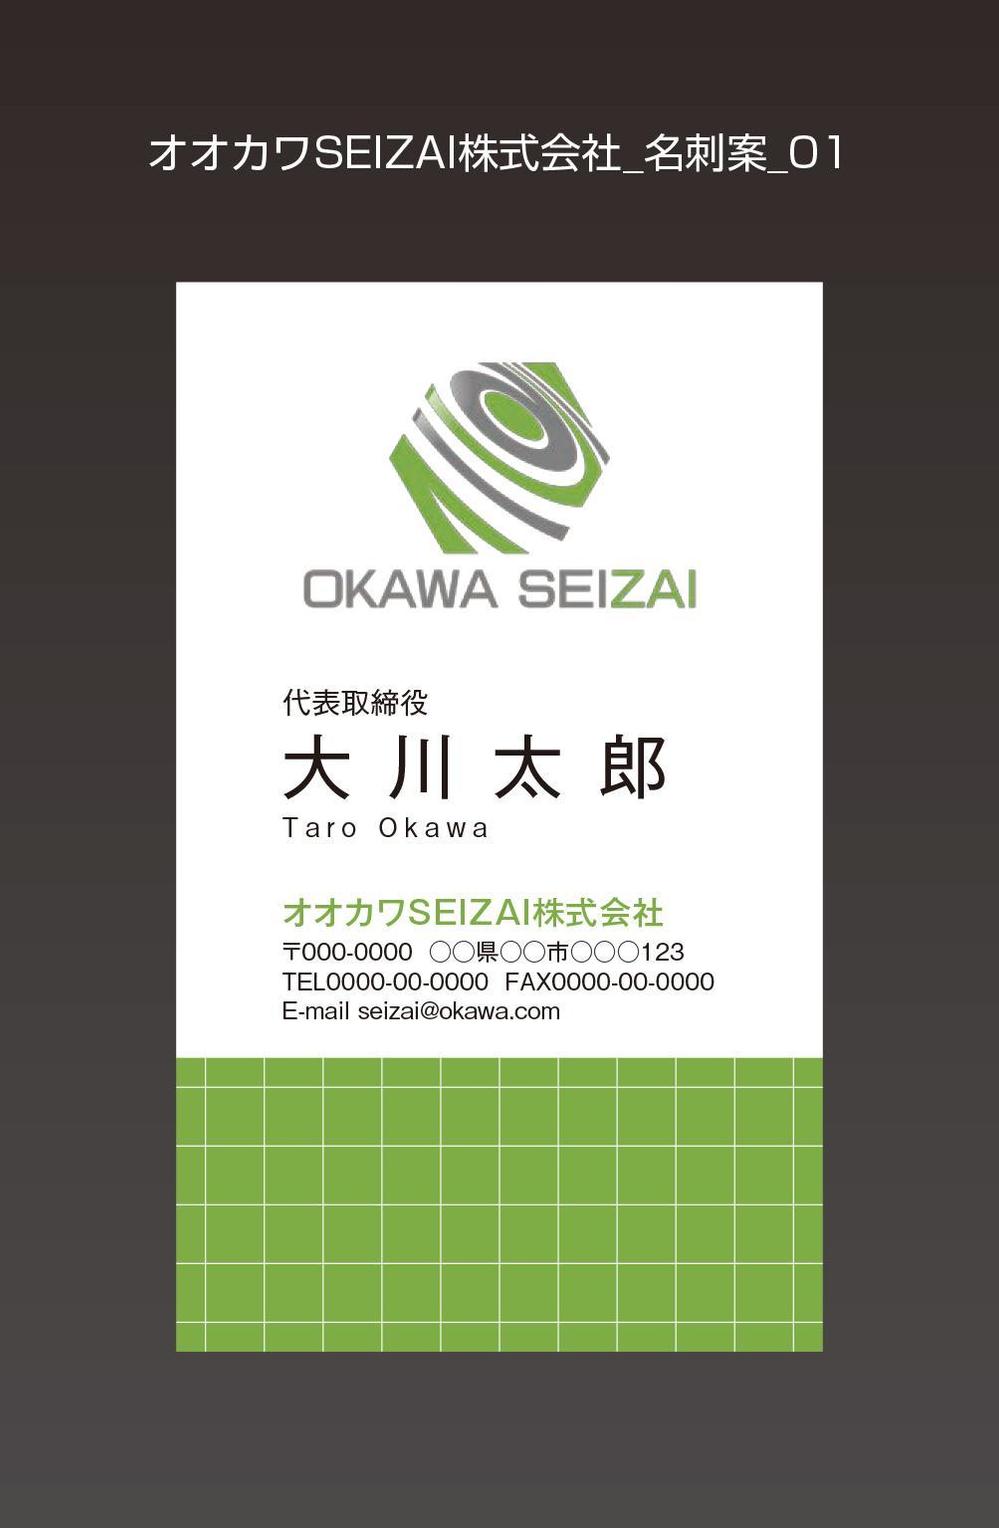 オオカワSEIZAI株式会社_名刺案_01.jpg